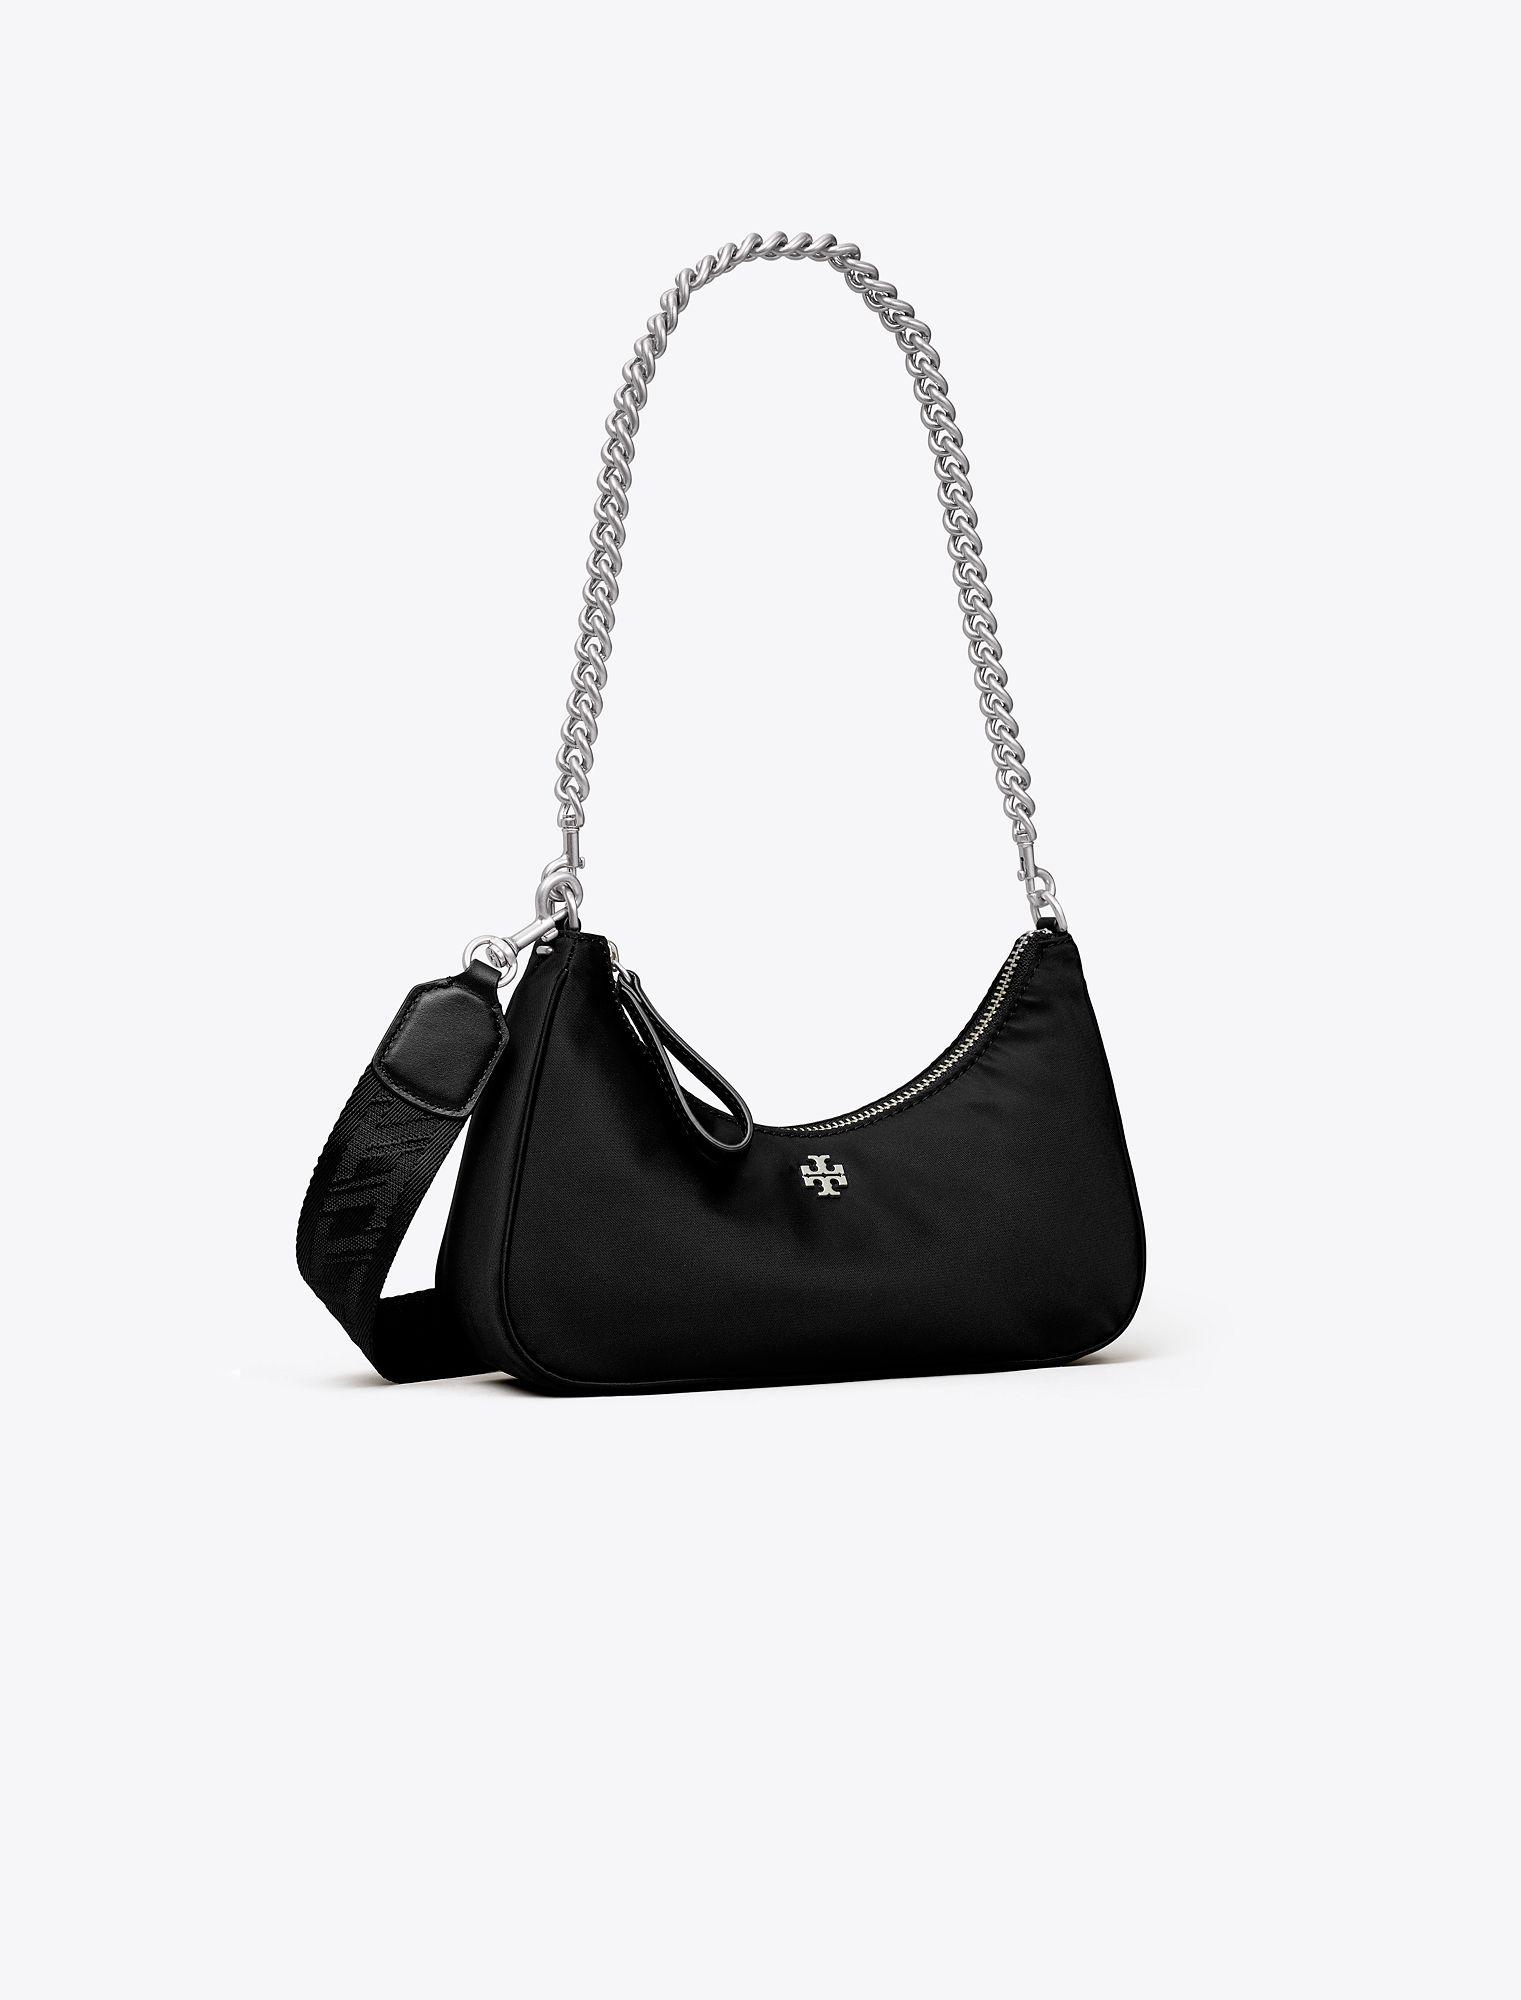 151 Mercer Crescent Bag in black leather